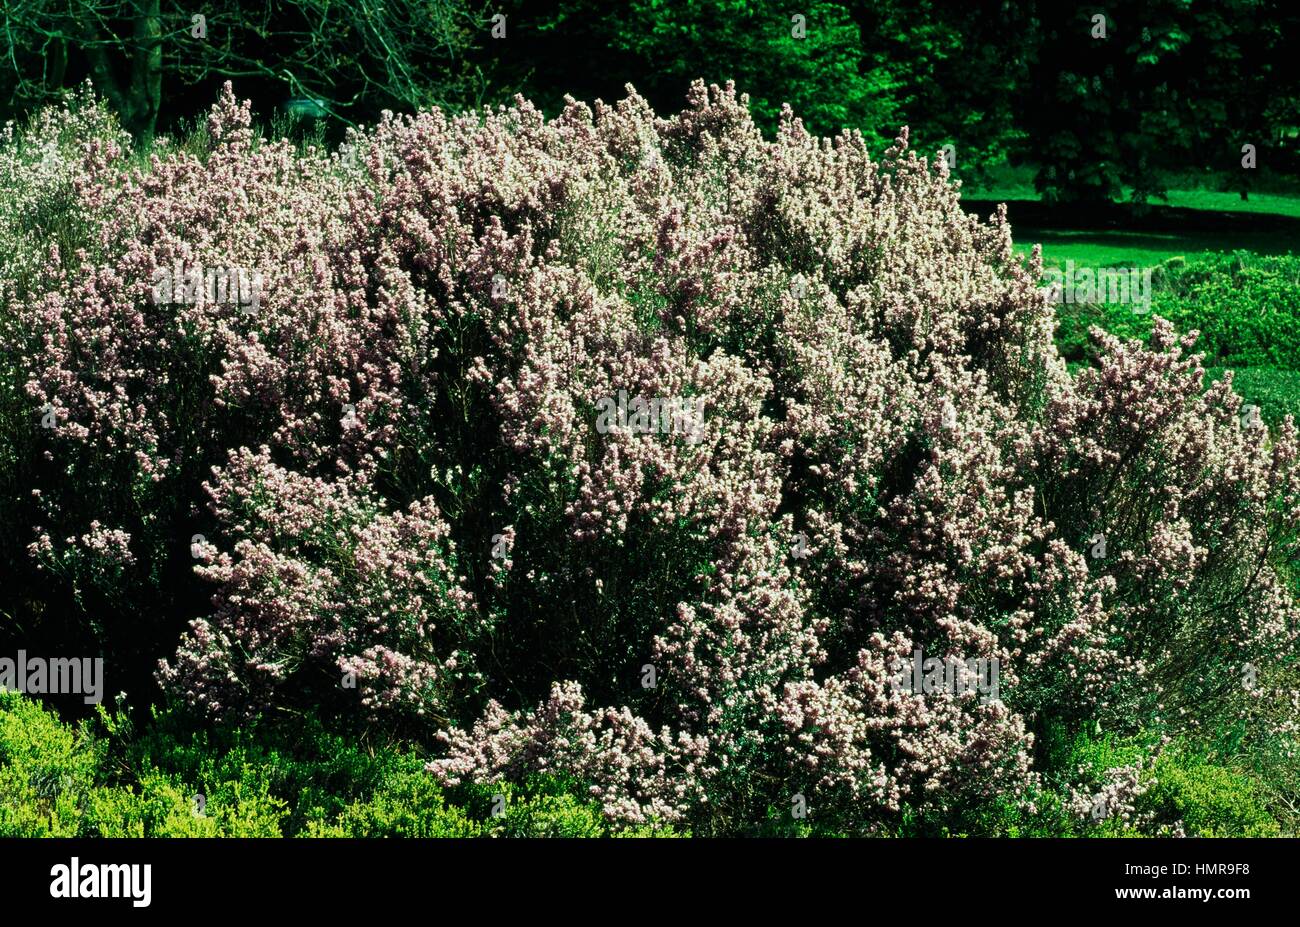 Irish heath (Erica erigena Superba), Ericaceae. Stock Photo